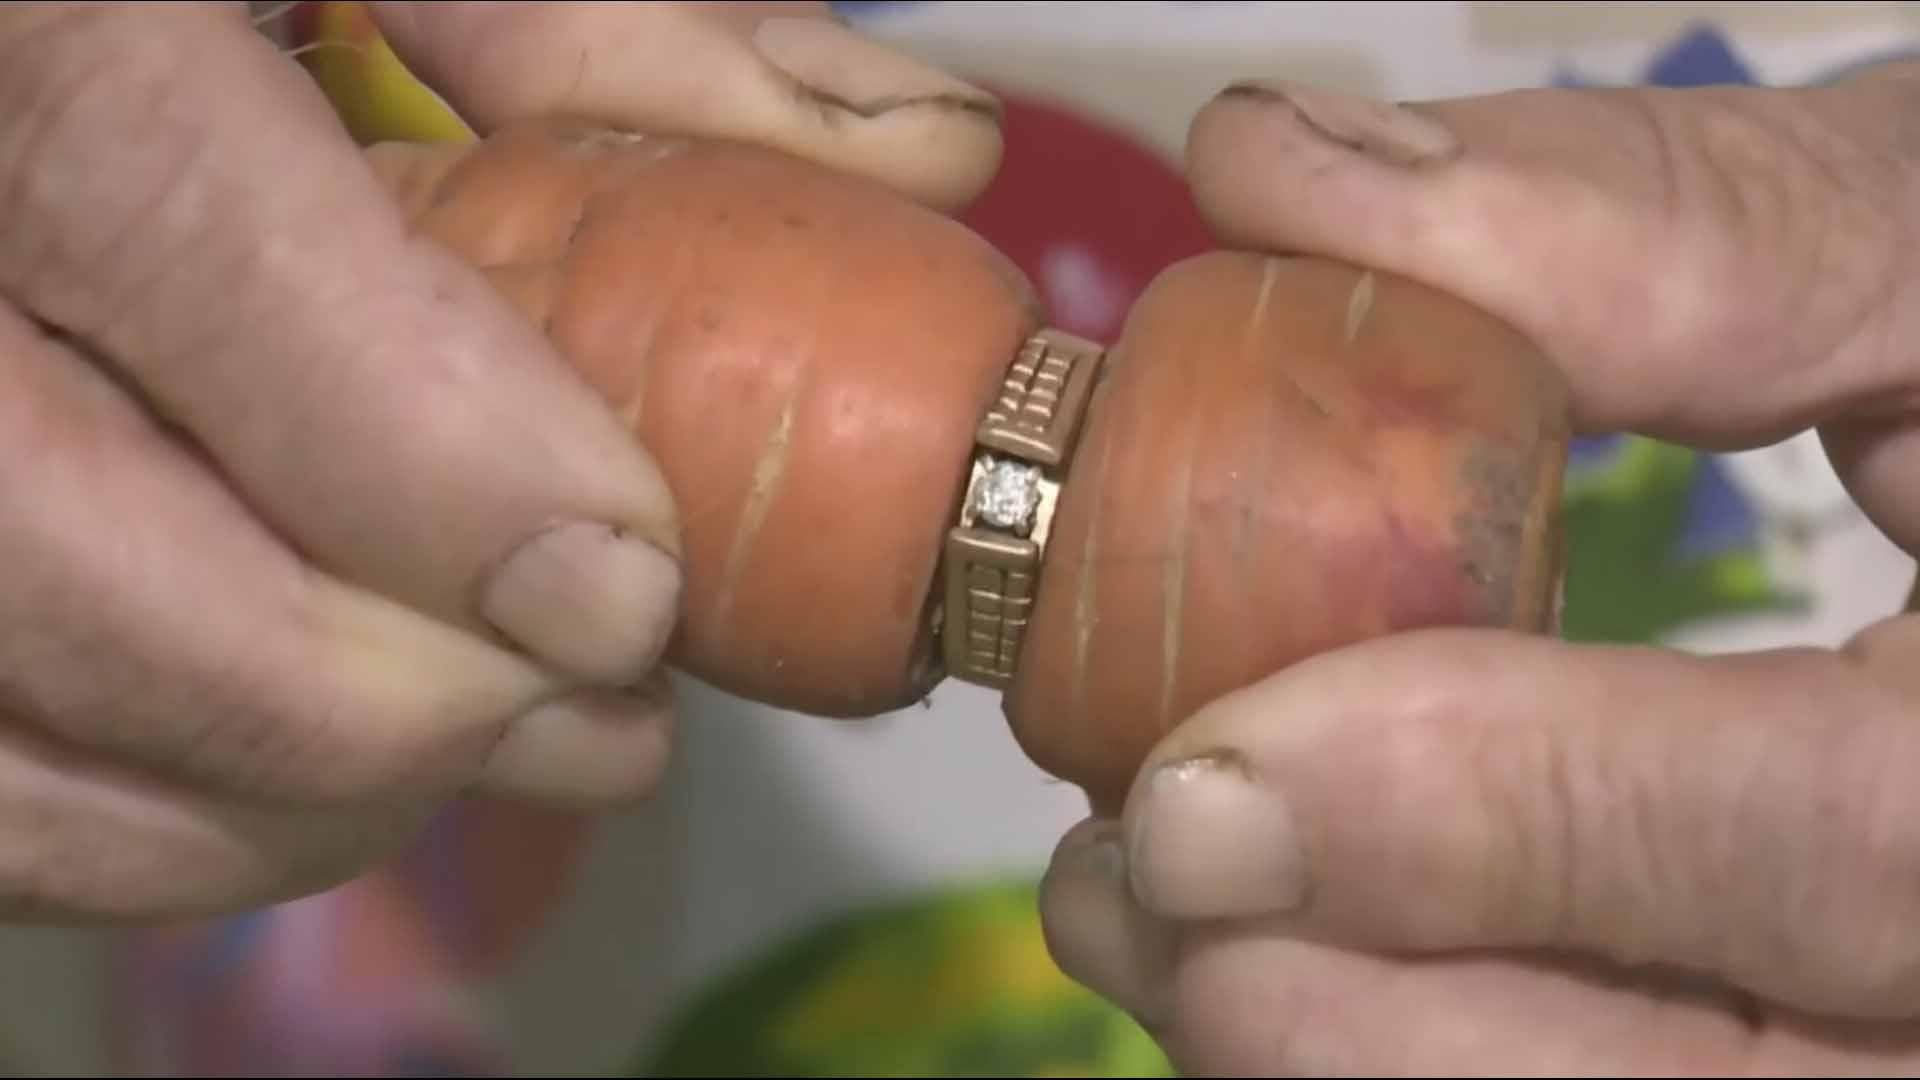 La trouvaille inattendue. Une bague perdue pendant 13 retrouvée autour d’une carotte dans le jardin